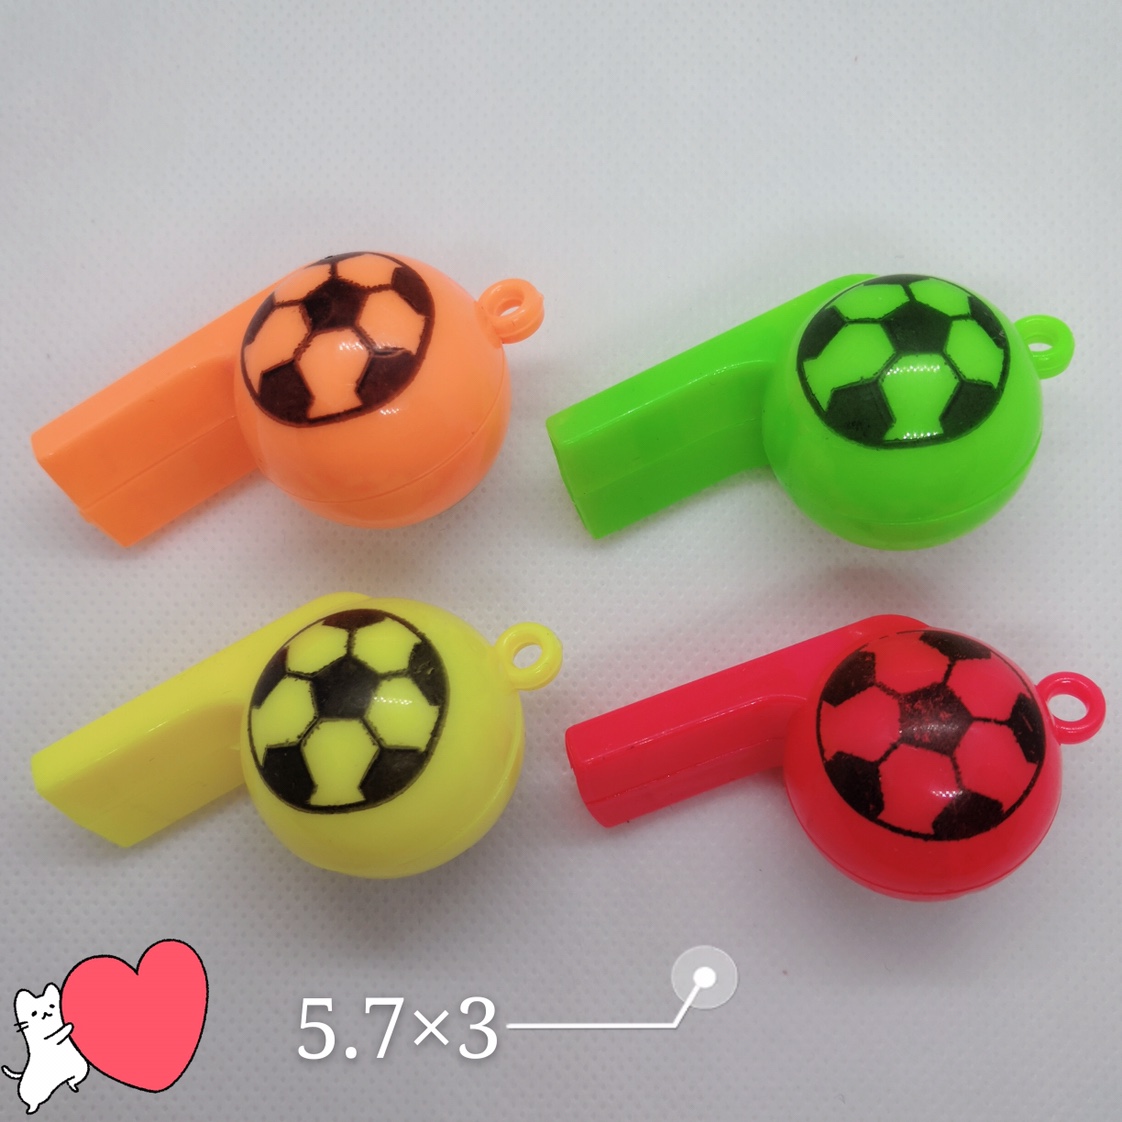 经典款双面印足球塑料玩具口哨运动会加油助威产品幼儿园六一活动赠品货源